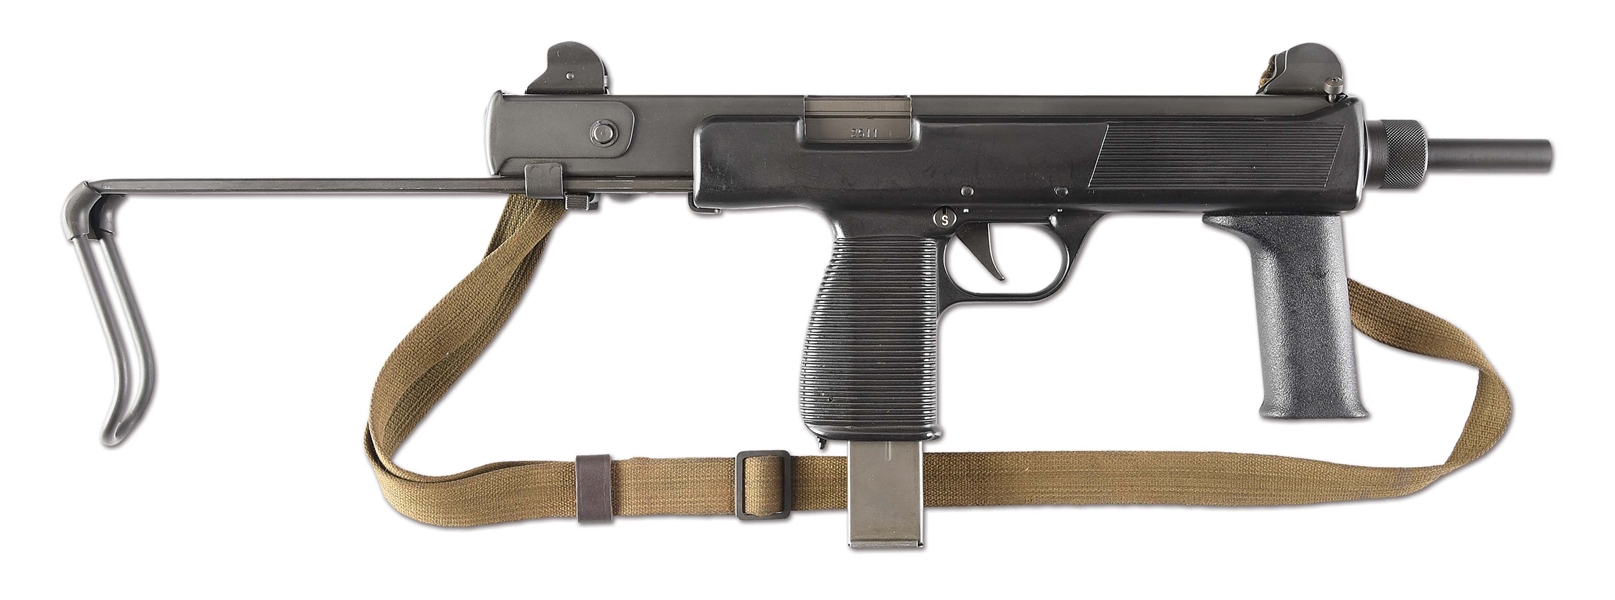 (N) EXCEPTIONALLY SCARCE CURIO & RELIC ELIGIBLE STEYR-DAIMLER-PUCH MPI-69 SUBMACHINE GUN (CURIO & RELIC).